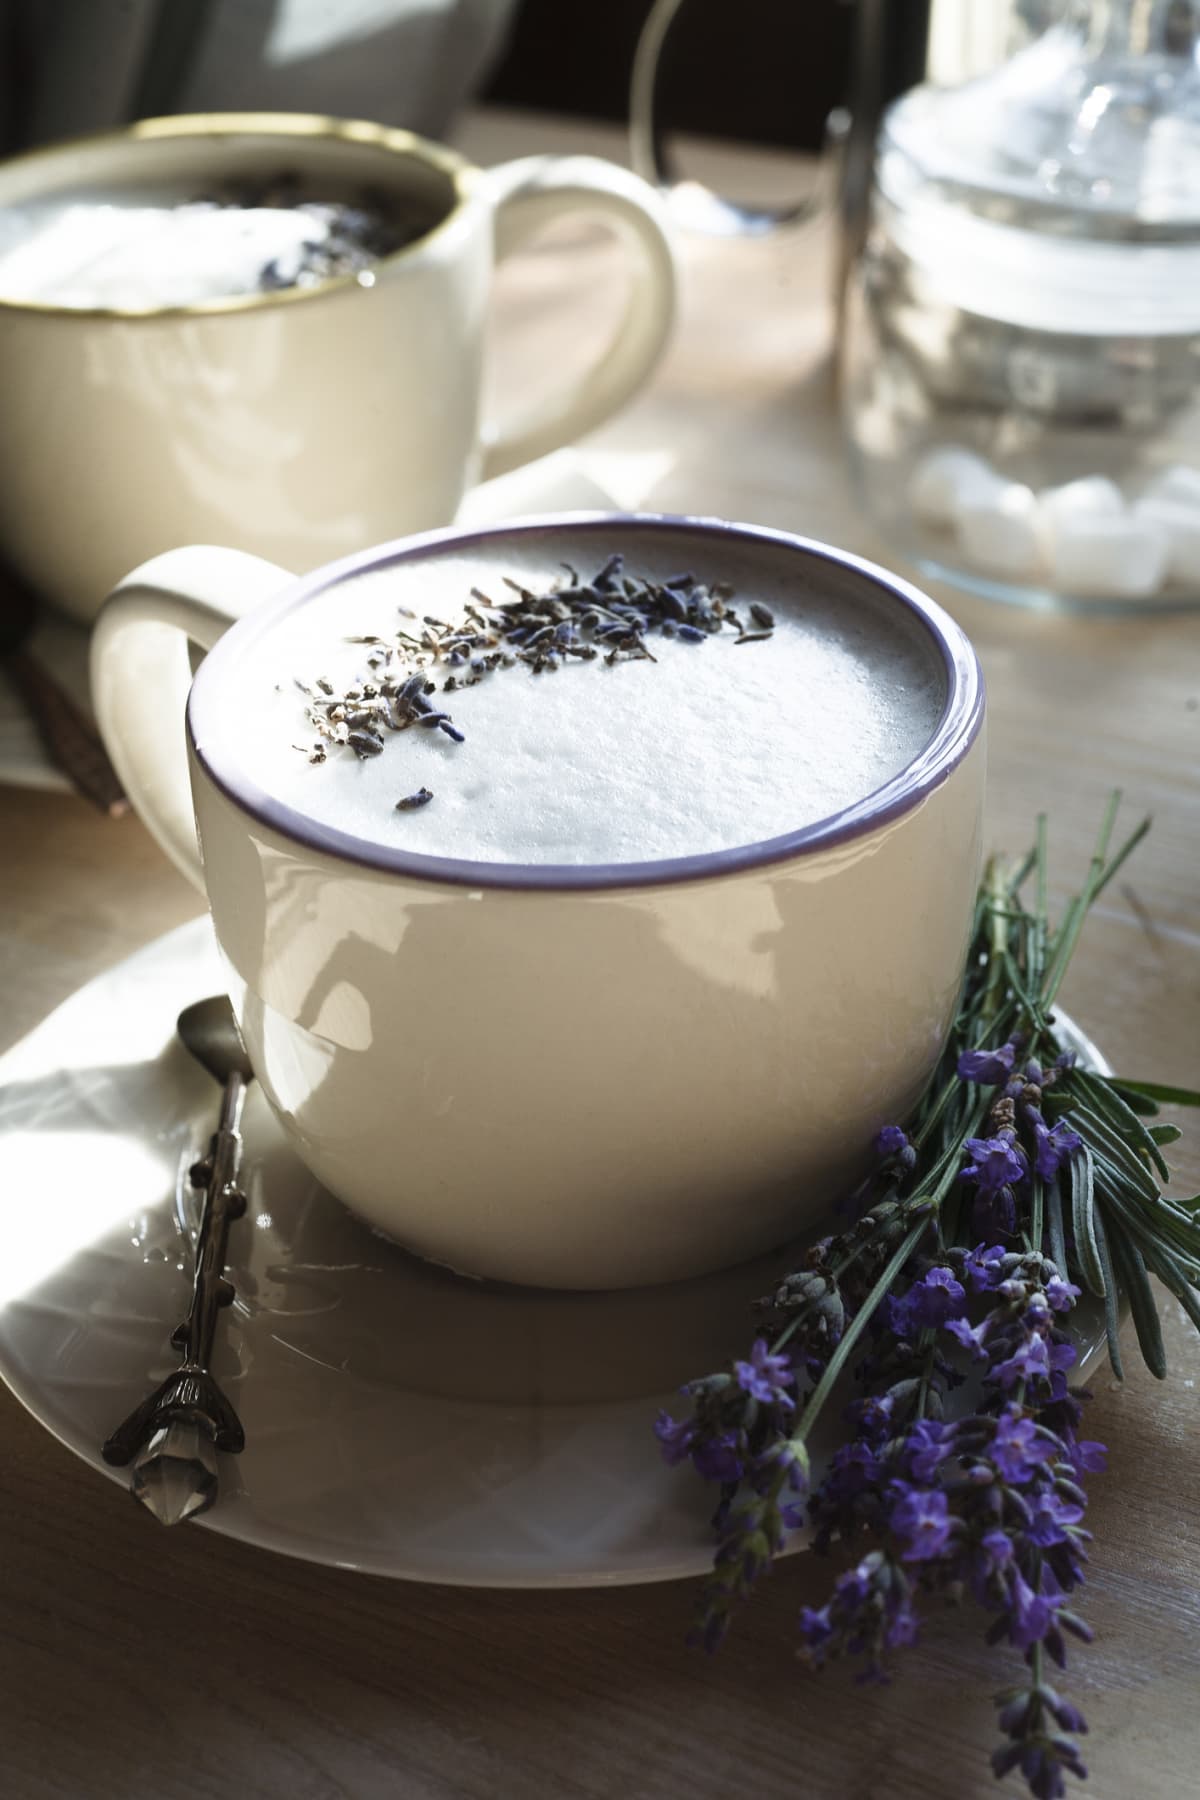 Tea latte, Earl Grey Hot London Fog Tea Drink with Foamed Milk, wooden background copy space